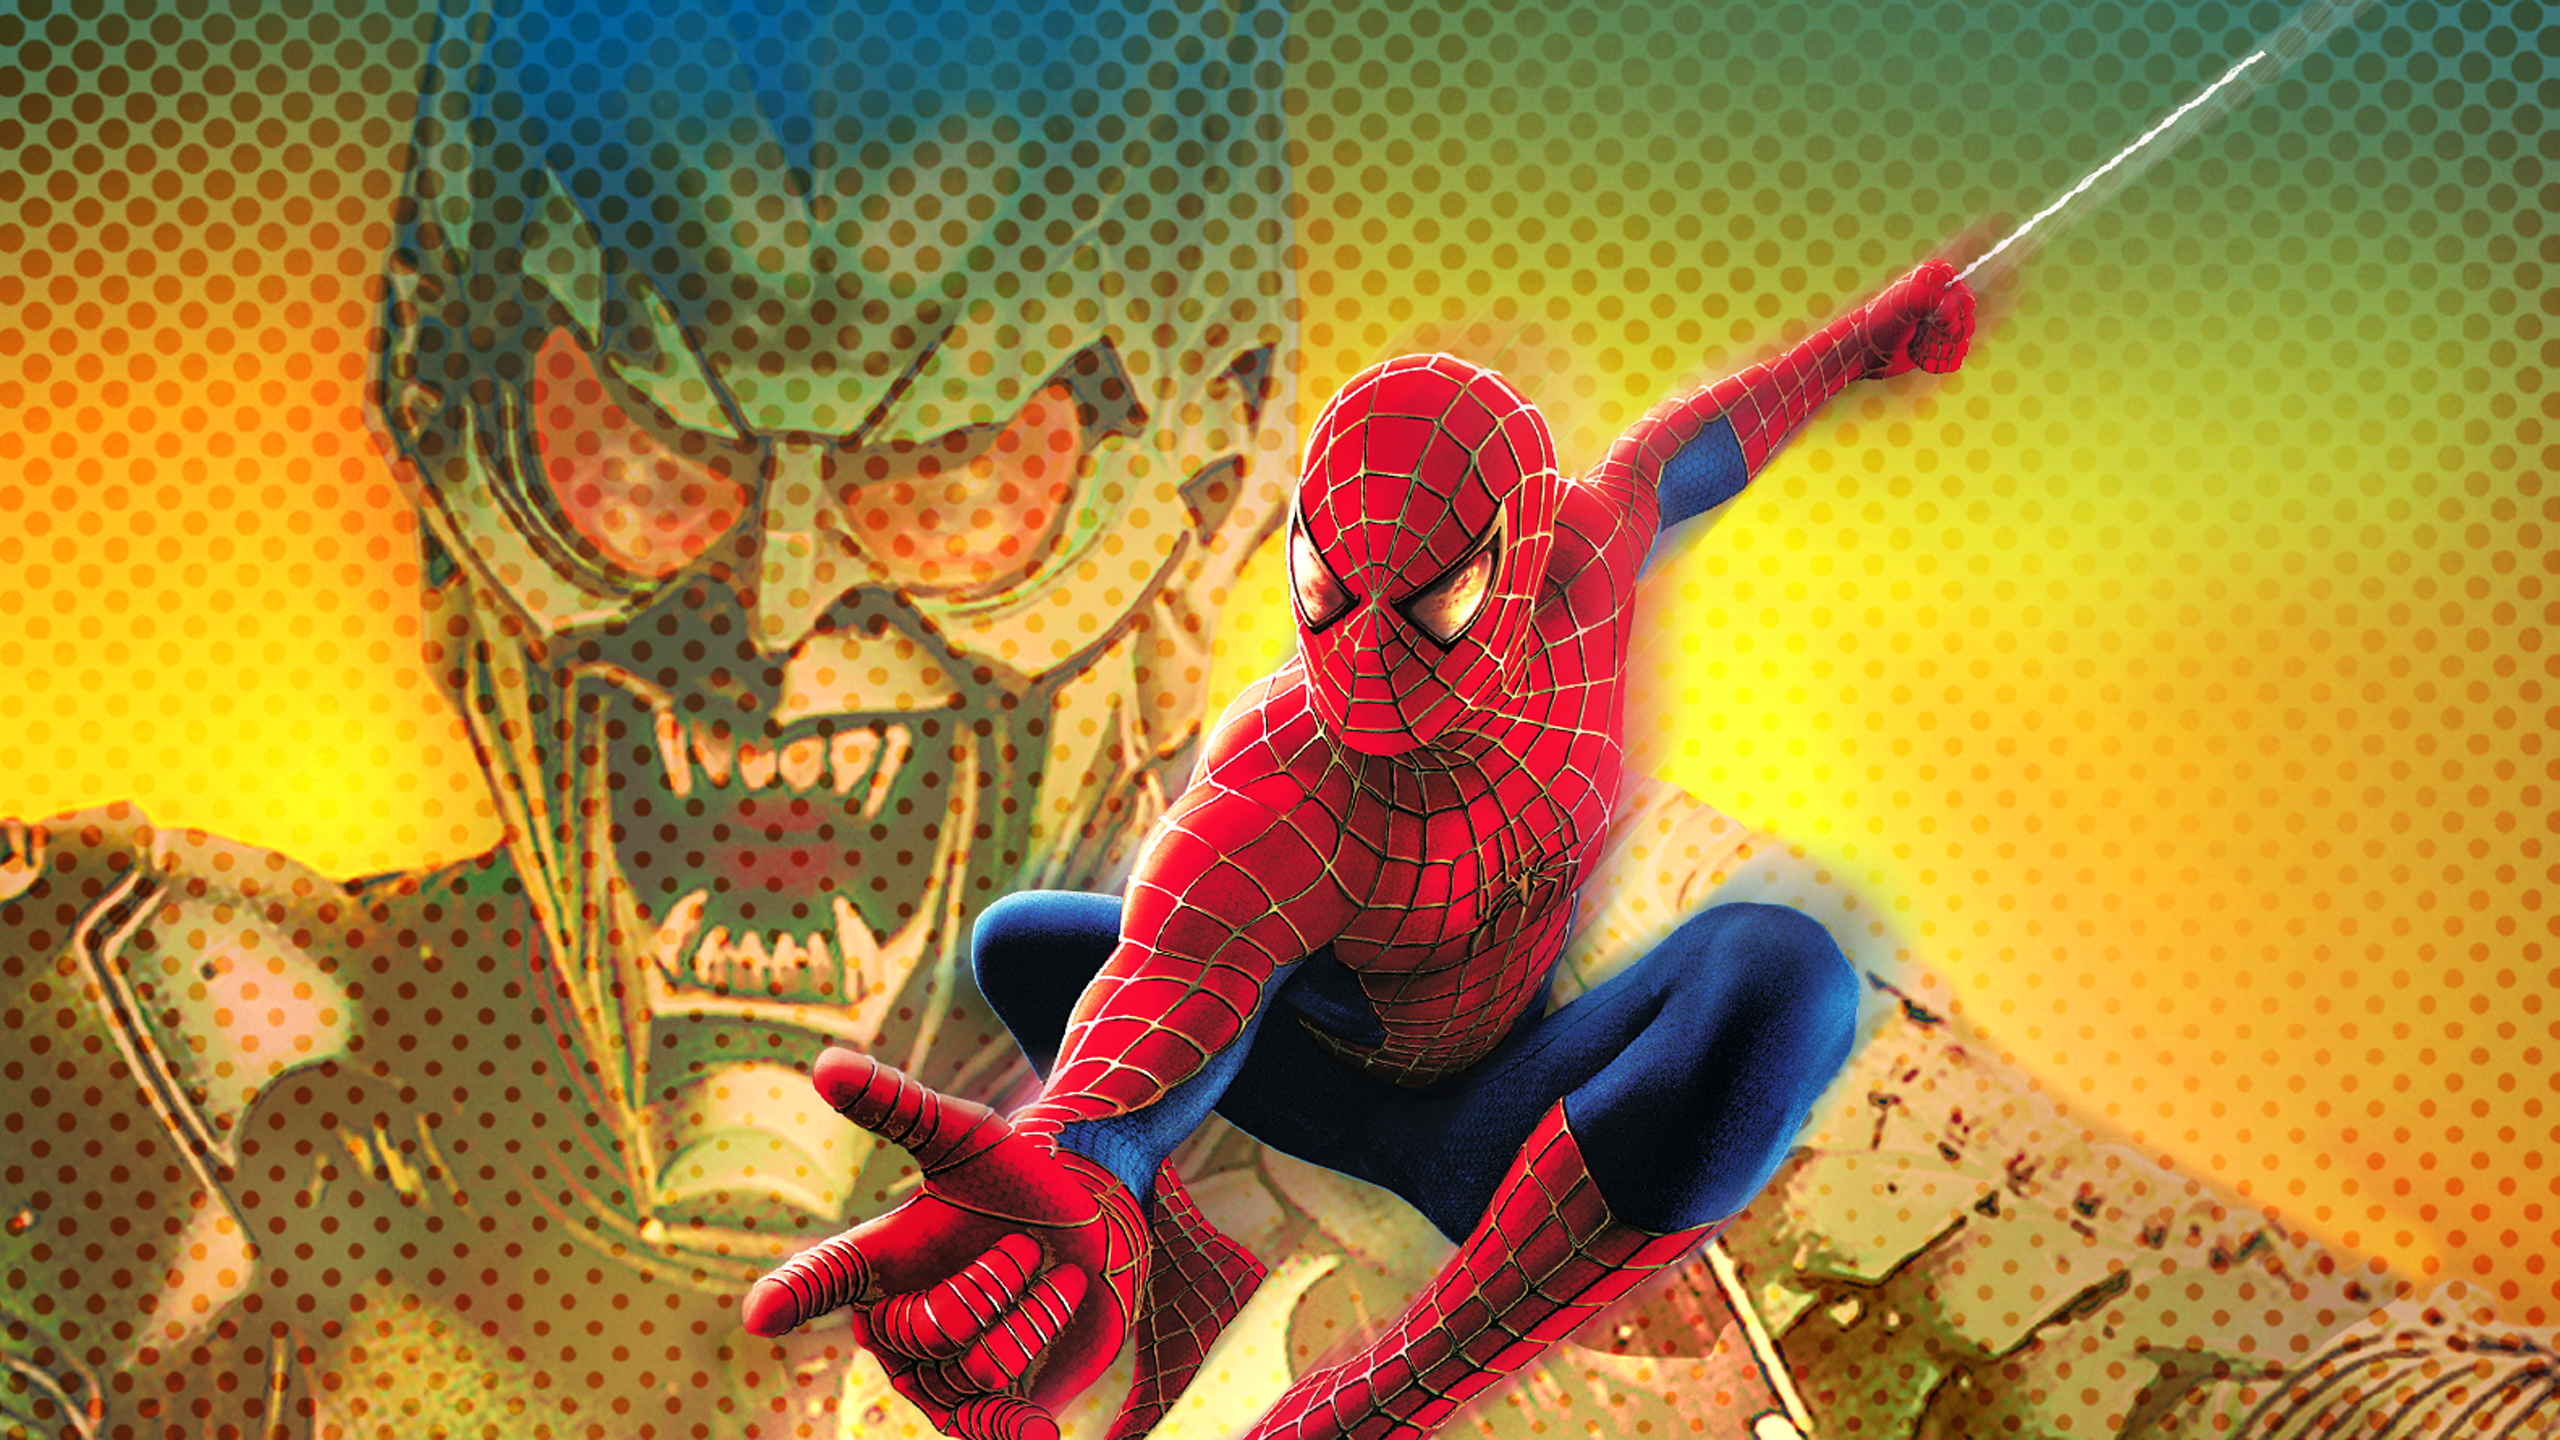 spiderman 1 movie online